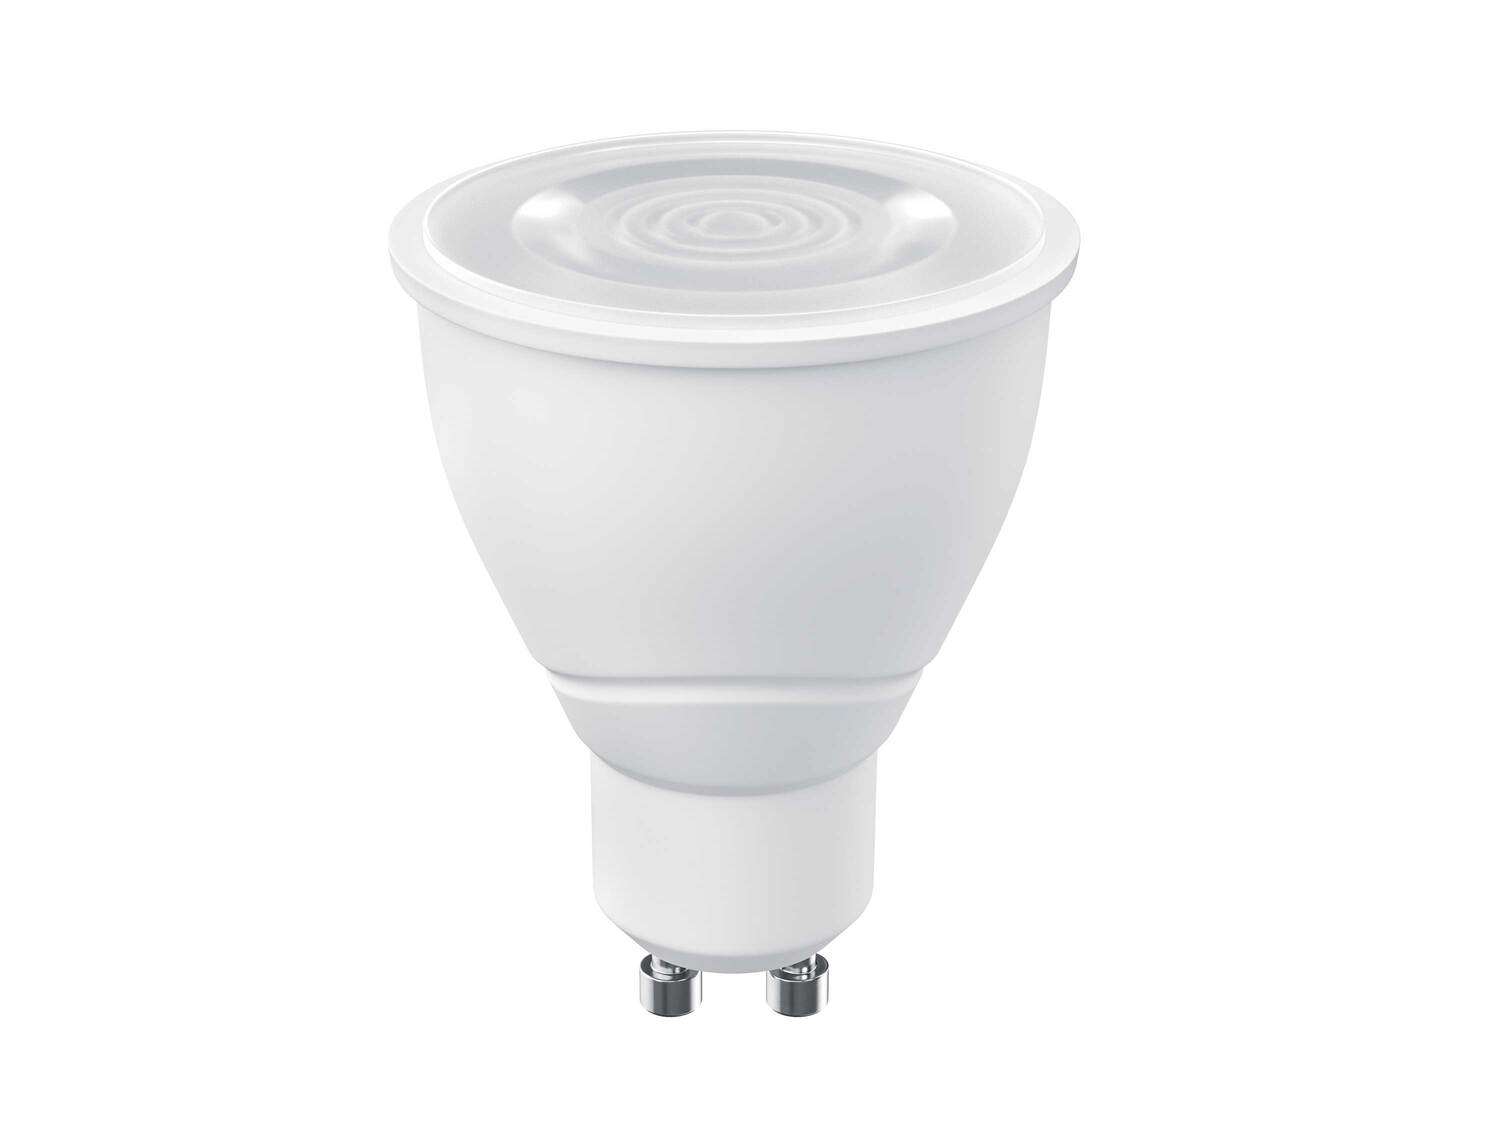 Ampoule LED connectée , le prix 9.99 € 
- E27, 9 W, 806 lm
- Commande vocale
- ...